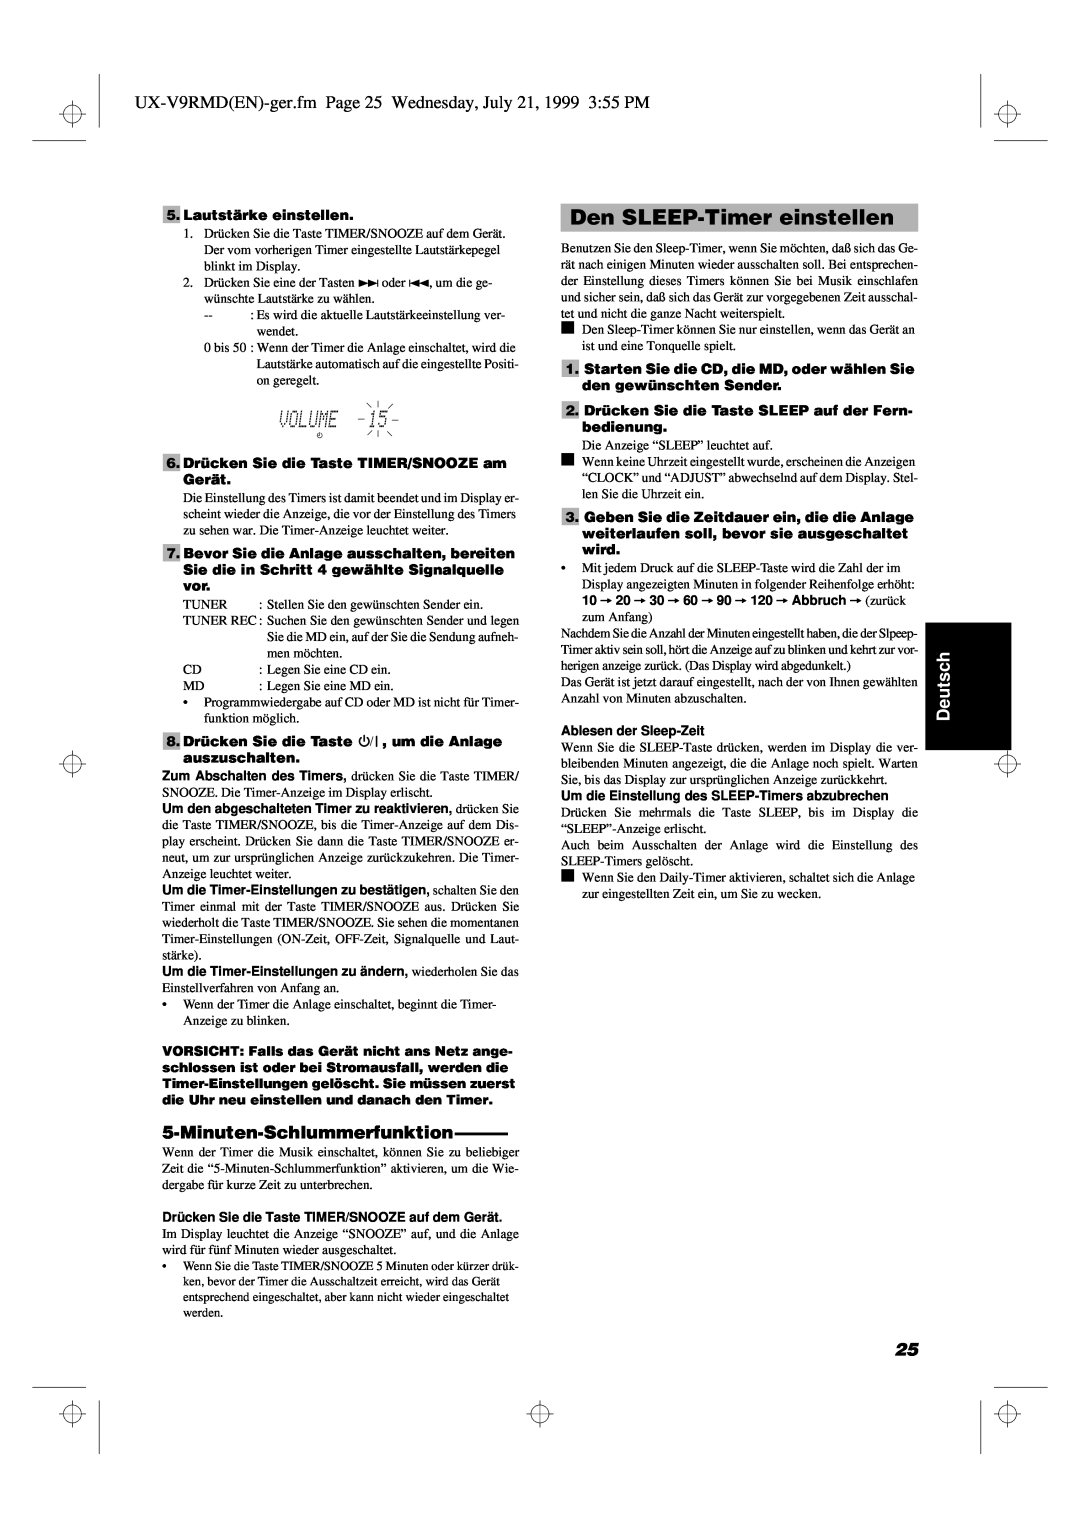 JVC UX-V9RMD manual Den SLEEP-Timereinstellen, Minuten-Schlummerfunktion, Deutsch 